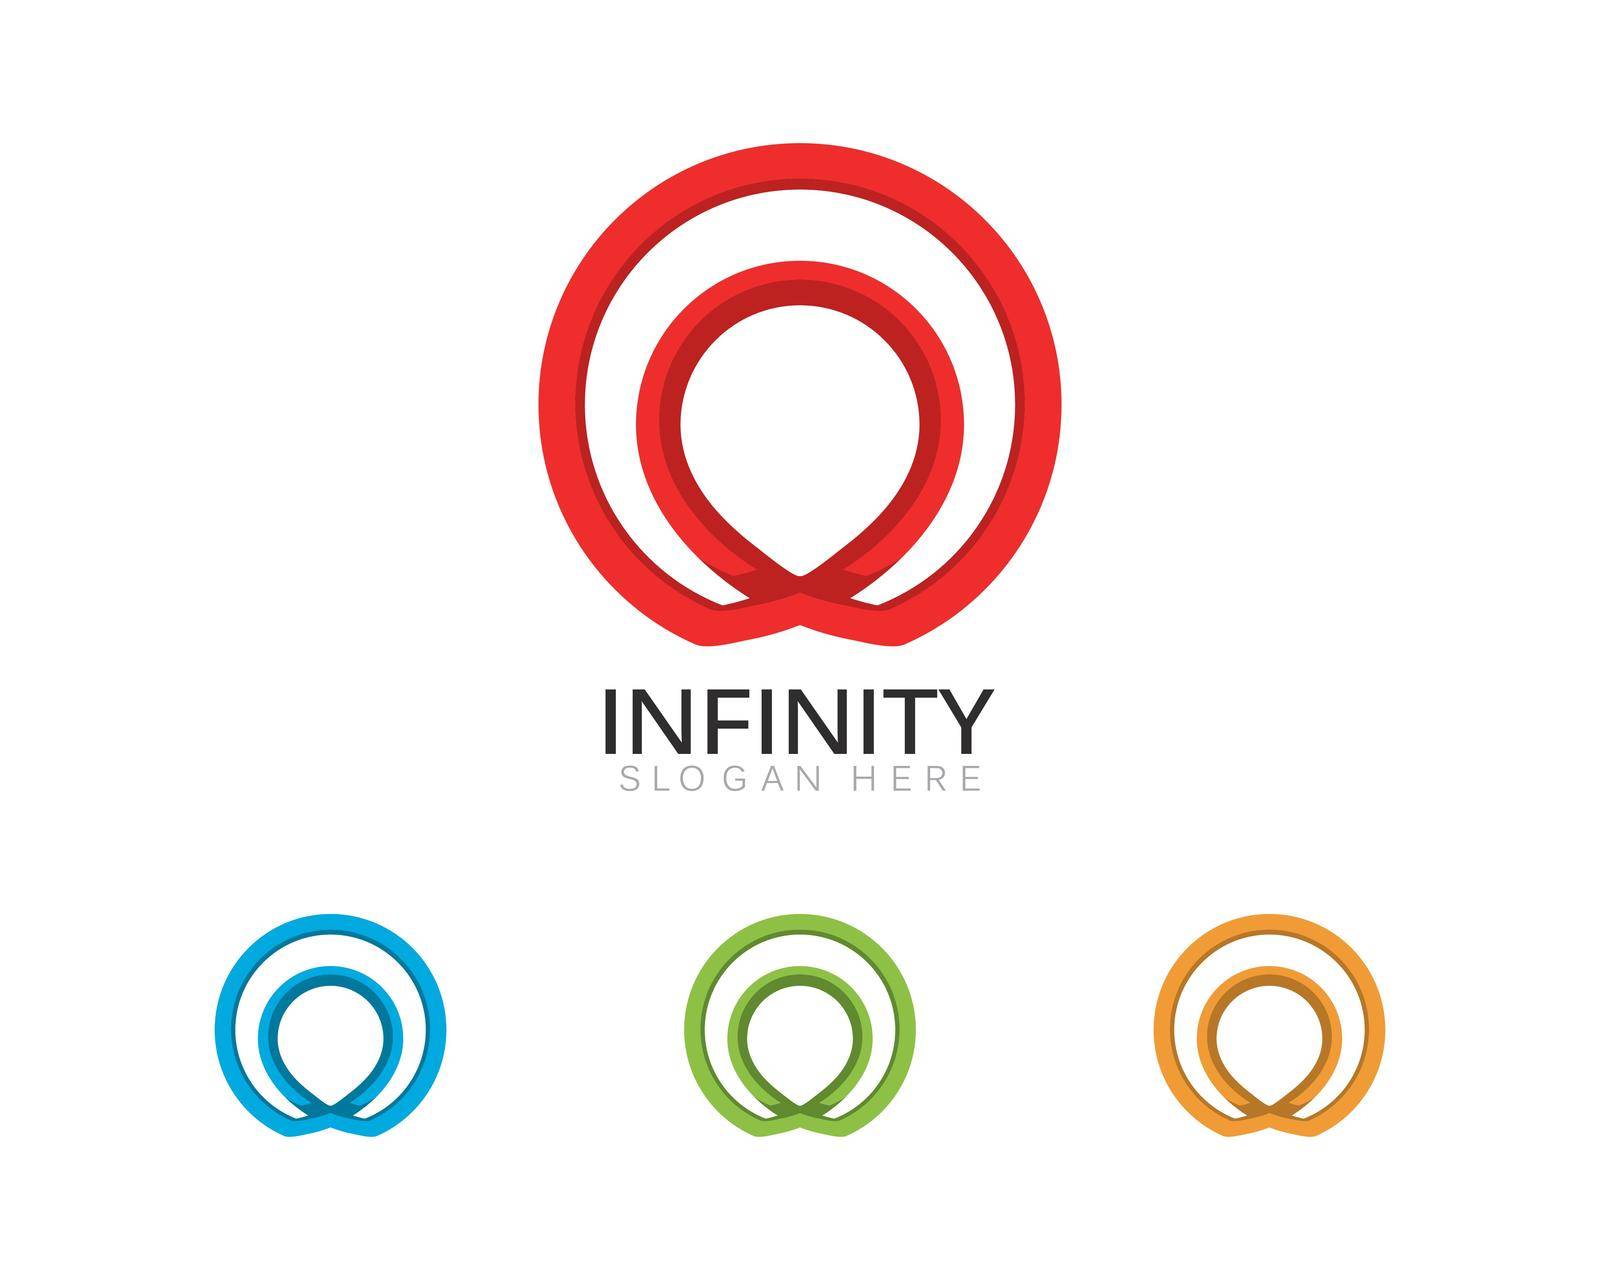 Infinity Design Infinity logo Vector Logo by kosasihindra55